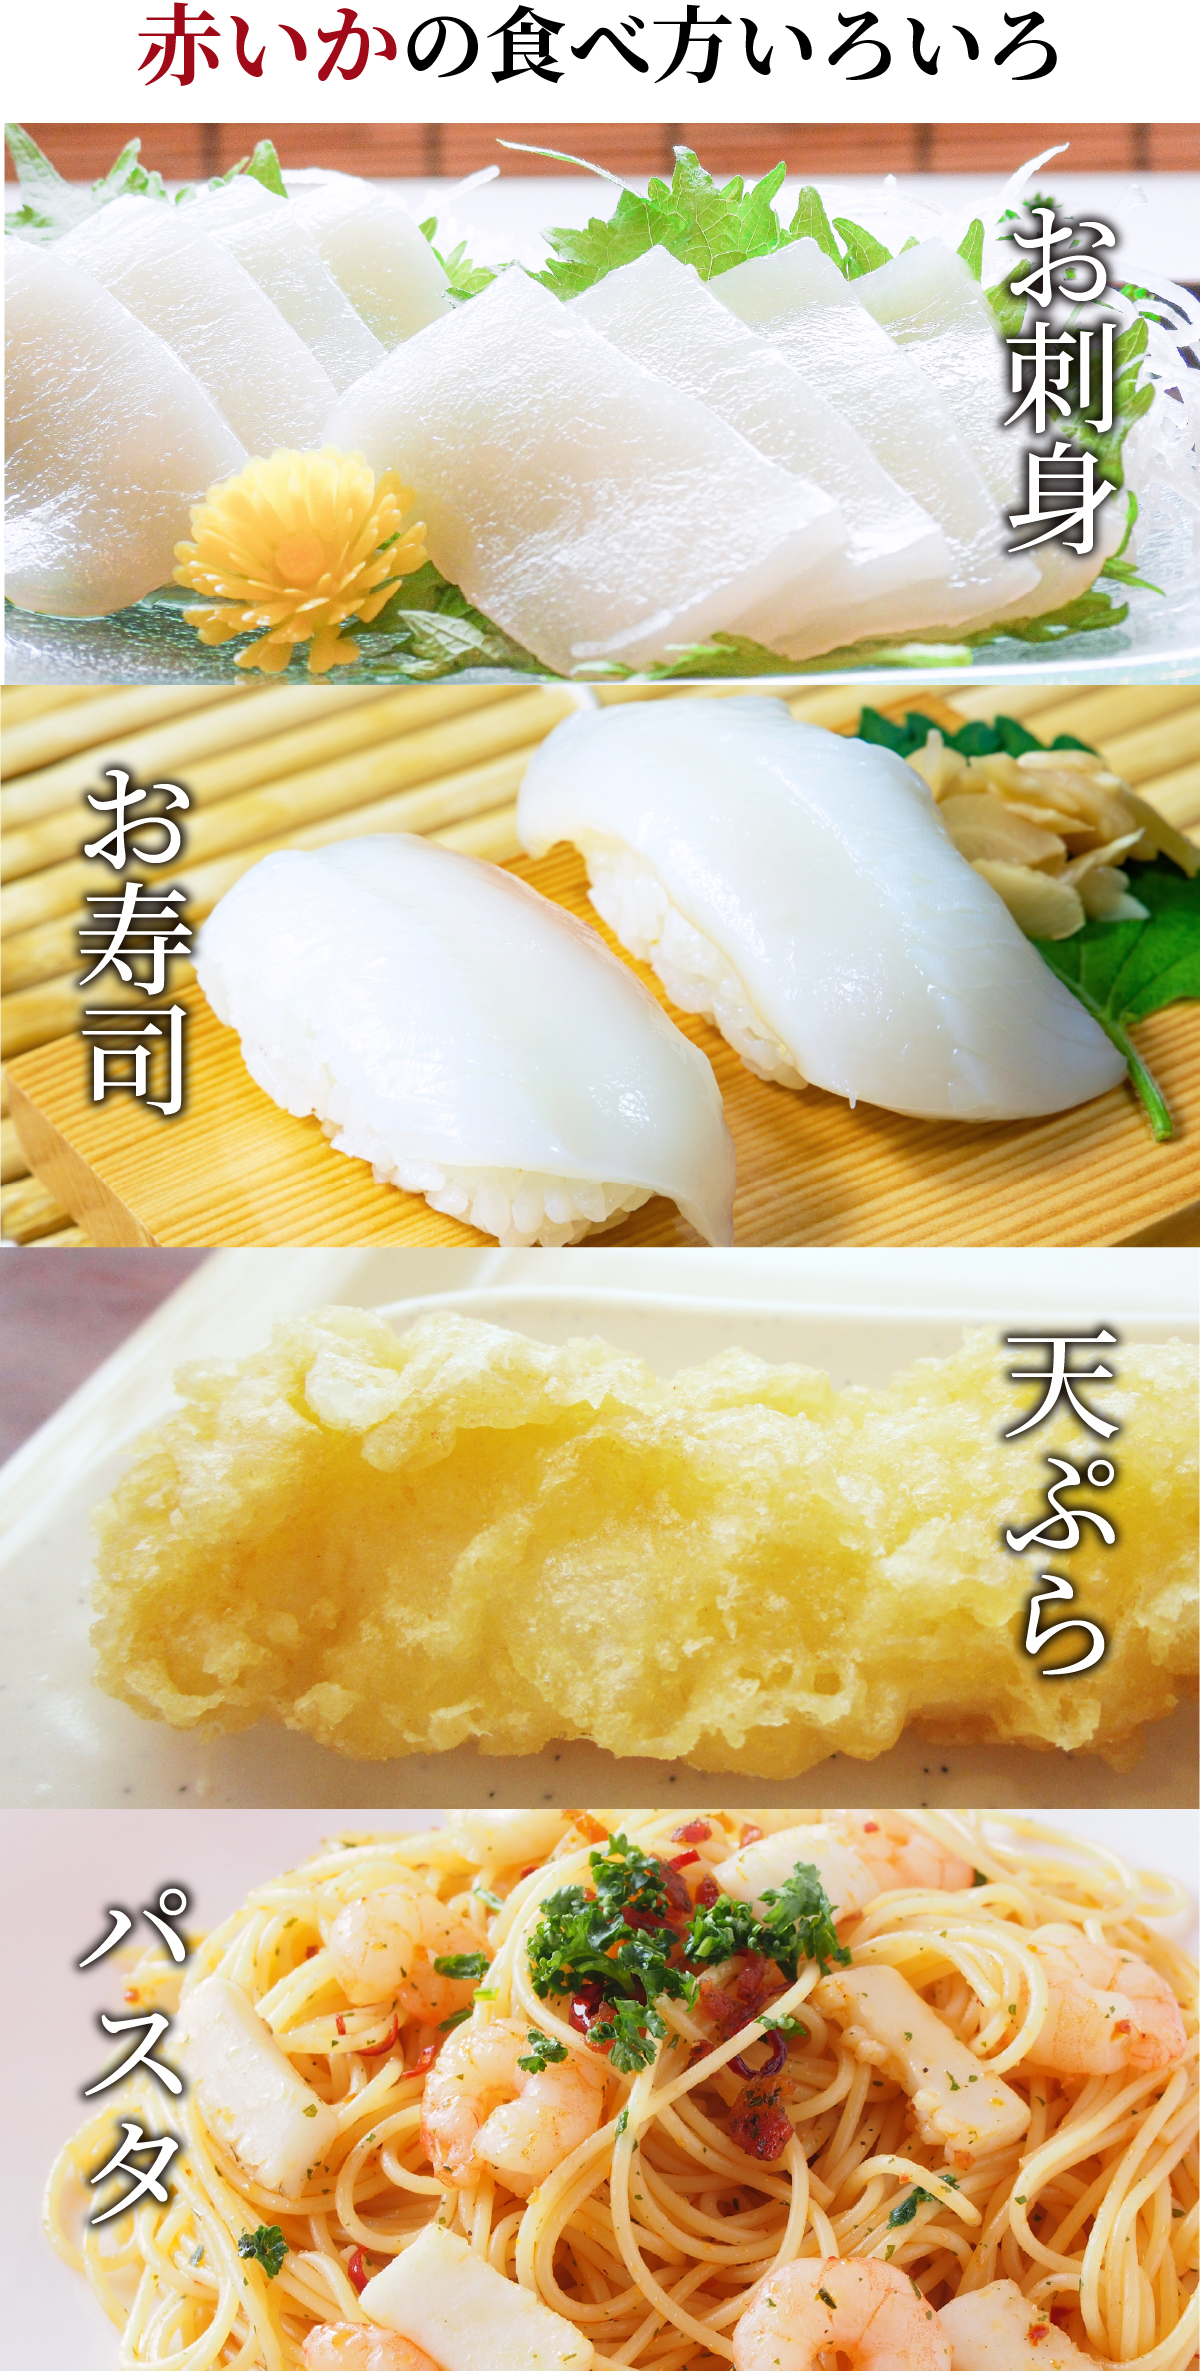 刺身 寿司 天ぷら パスタ